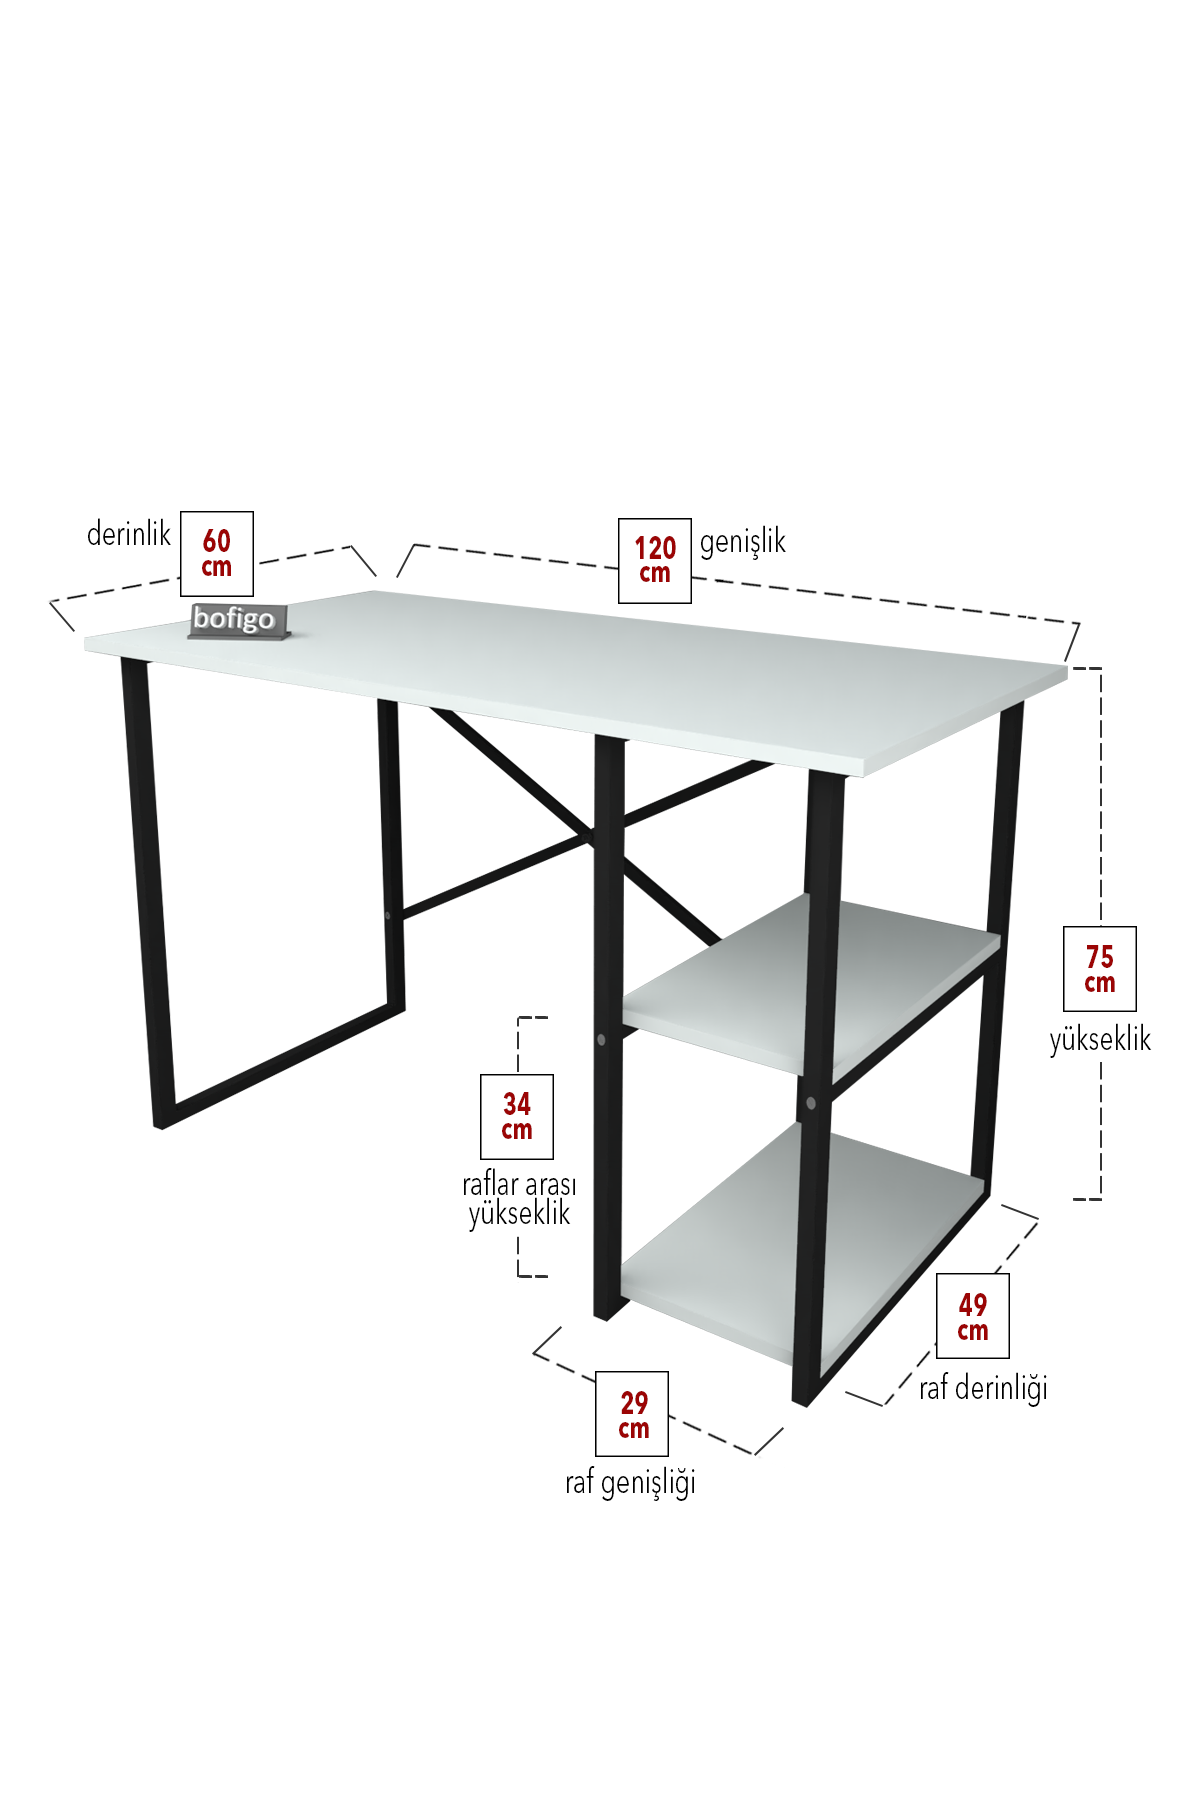 Bofigo 2 Shelf Study Desk 60x120 cm  White